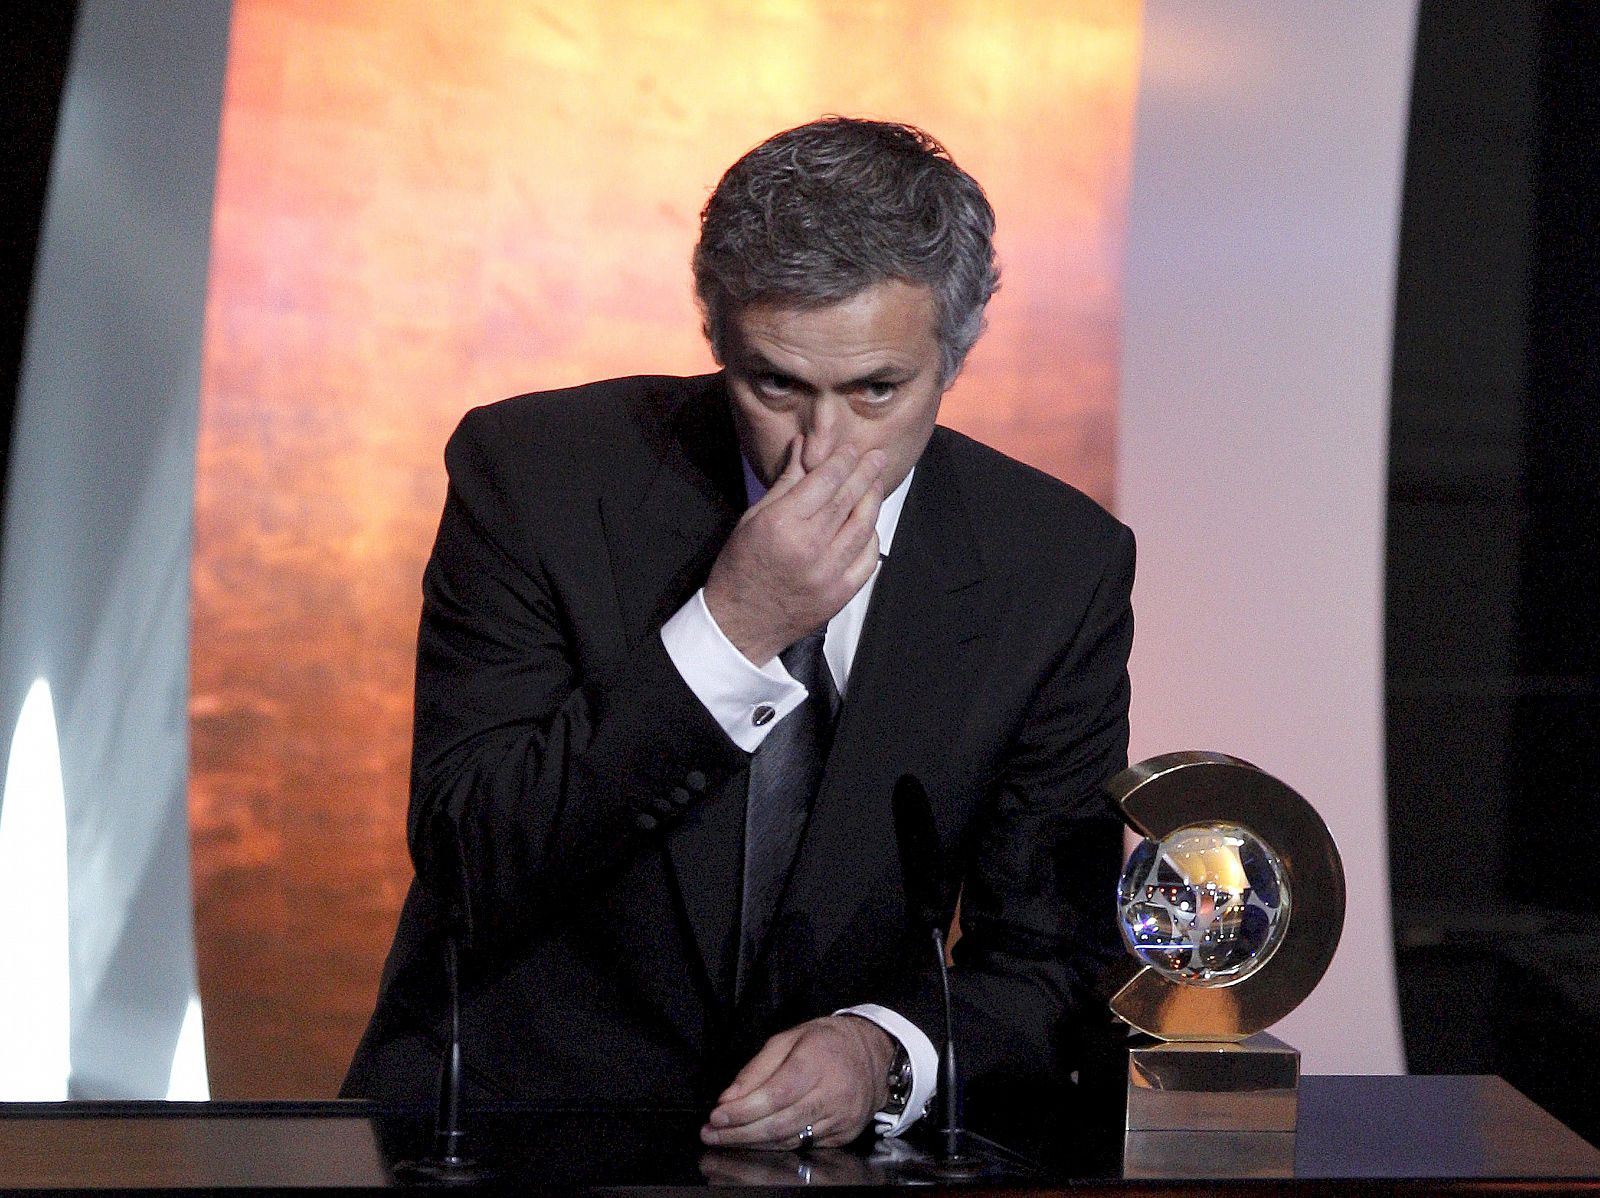 El entrenador portugués del Real Madrid, José Mourinho, tras ser galardonado con el Premio FIFA al mejor entrenador de 2010 por su triplete con el Inter de Milán.